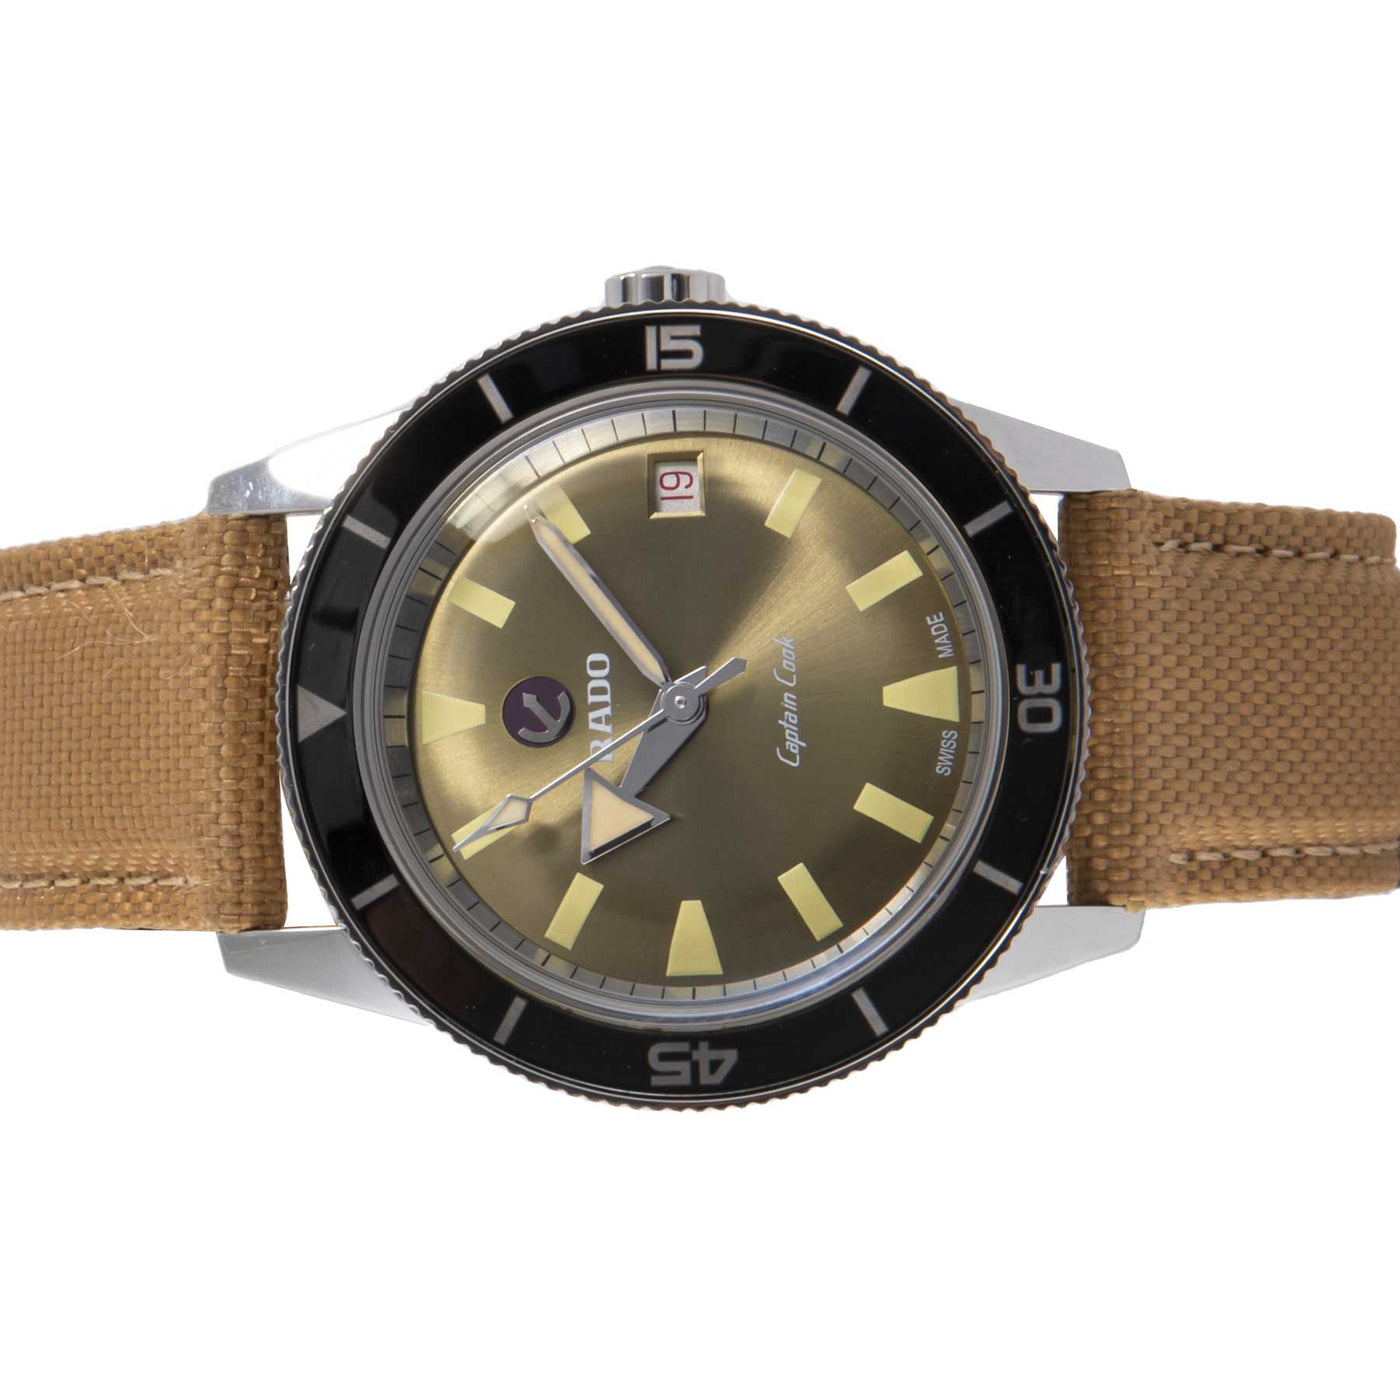 Rado Captain Cook 01.763.0500.3.13 - Timepiece360